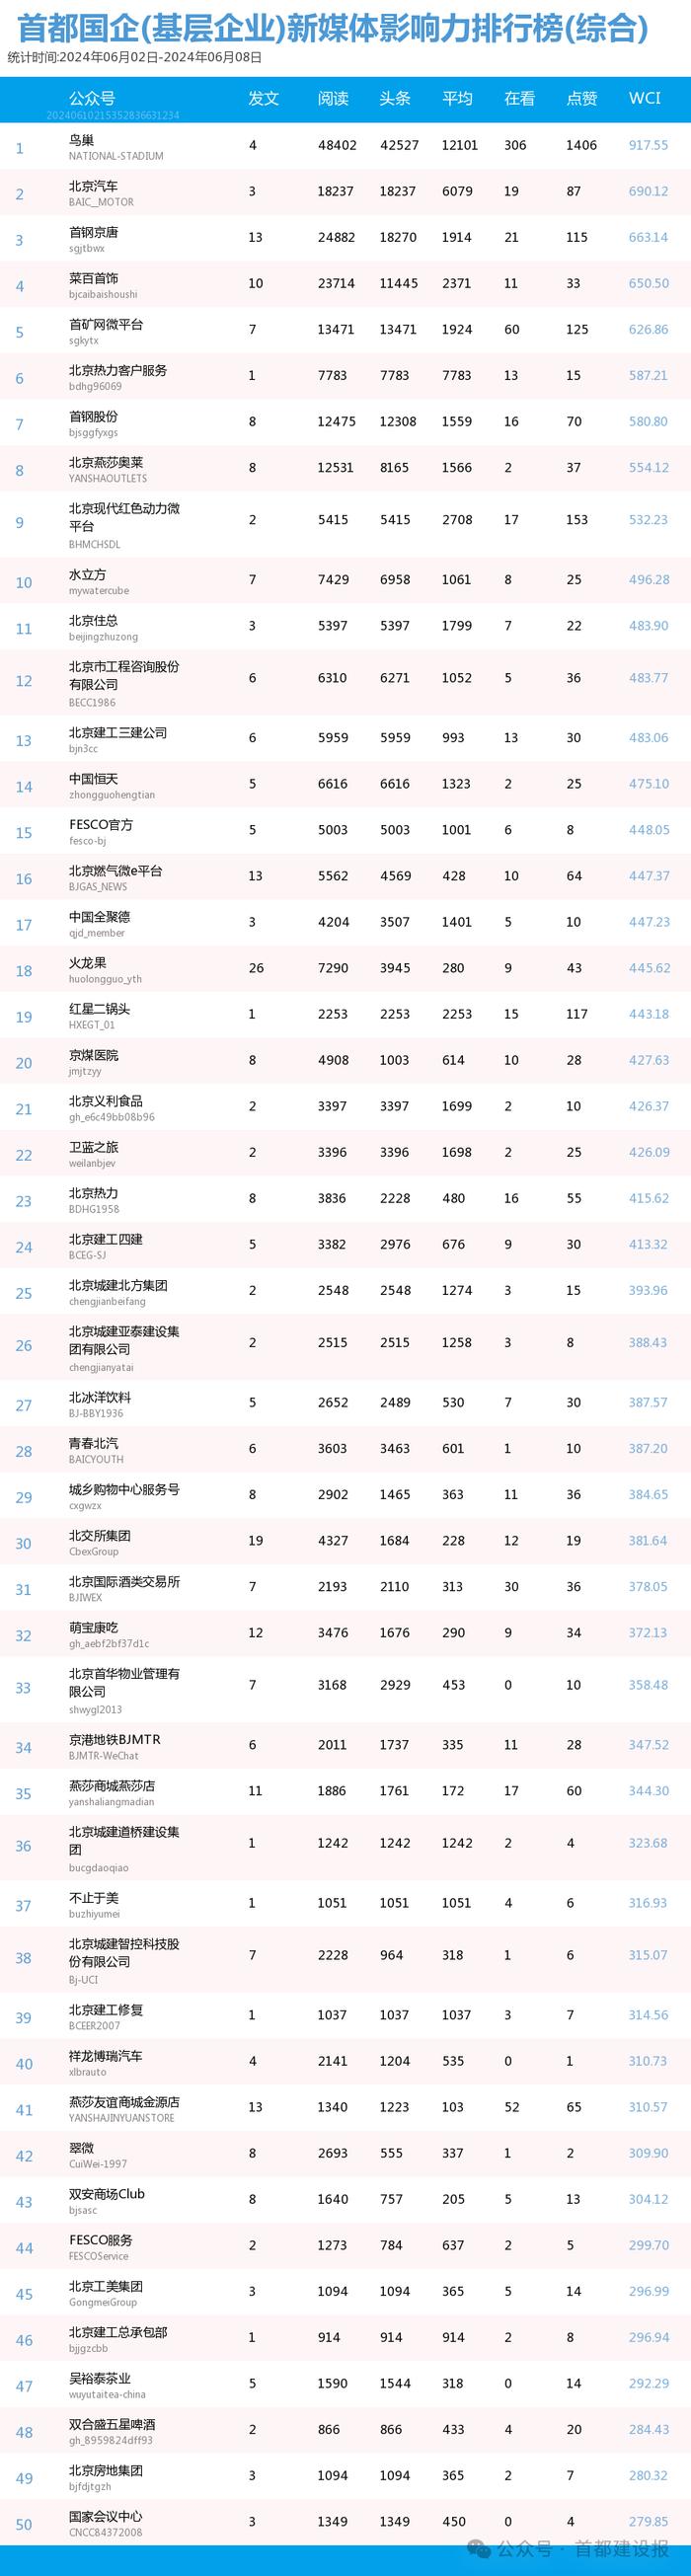 【北京国企新媒体影响力排行榜】5月月榜及周榜(6.2-6.8)第411期